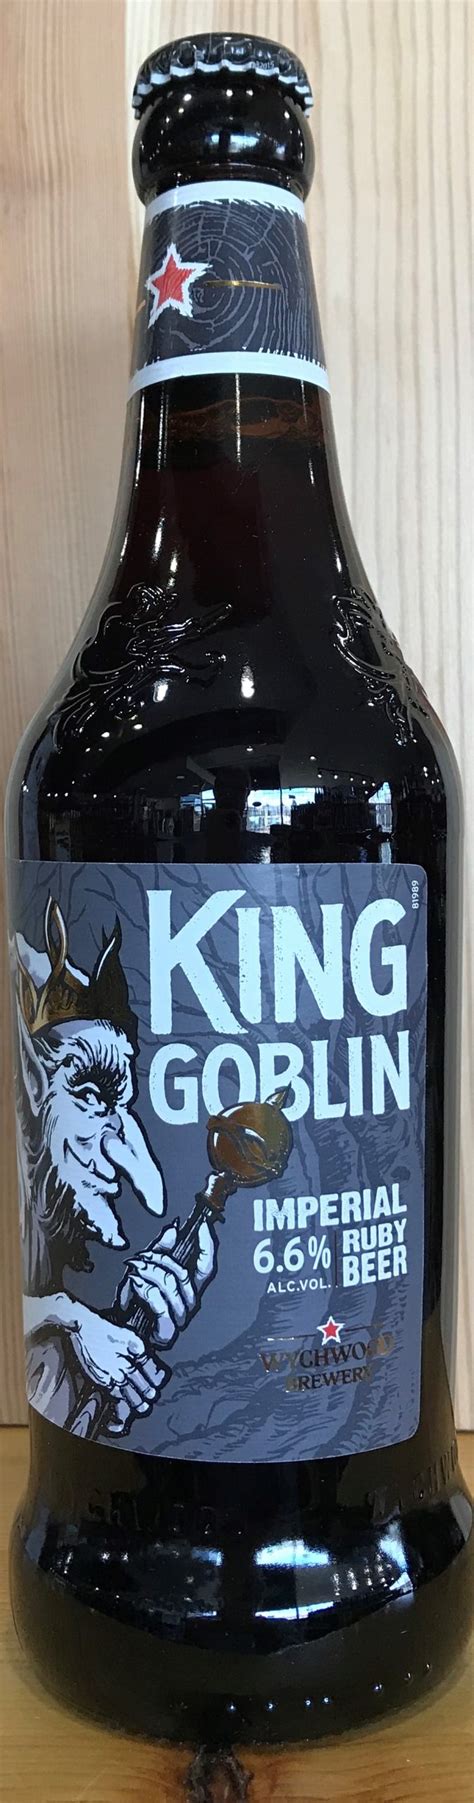 wychwood brewery king goblin imperial ruby beer 500ml